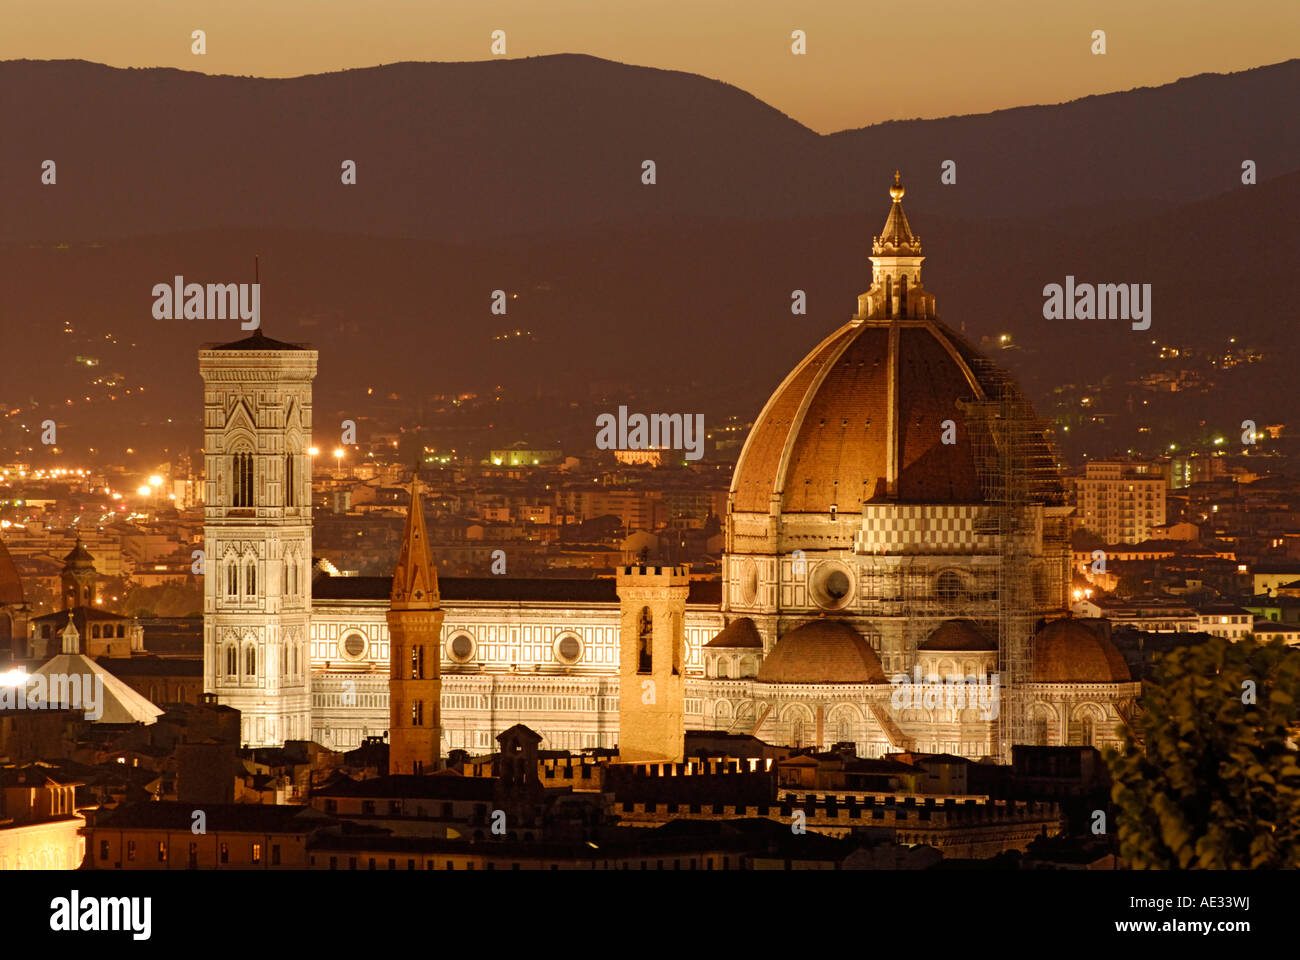 Duomo Santa Maria del Fiore, Florence, Italy at dusk. Stock Photo